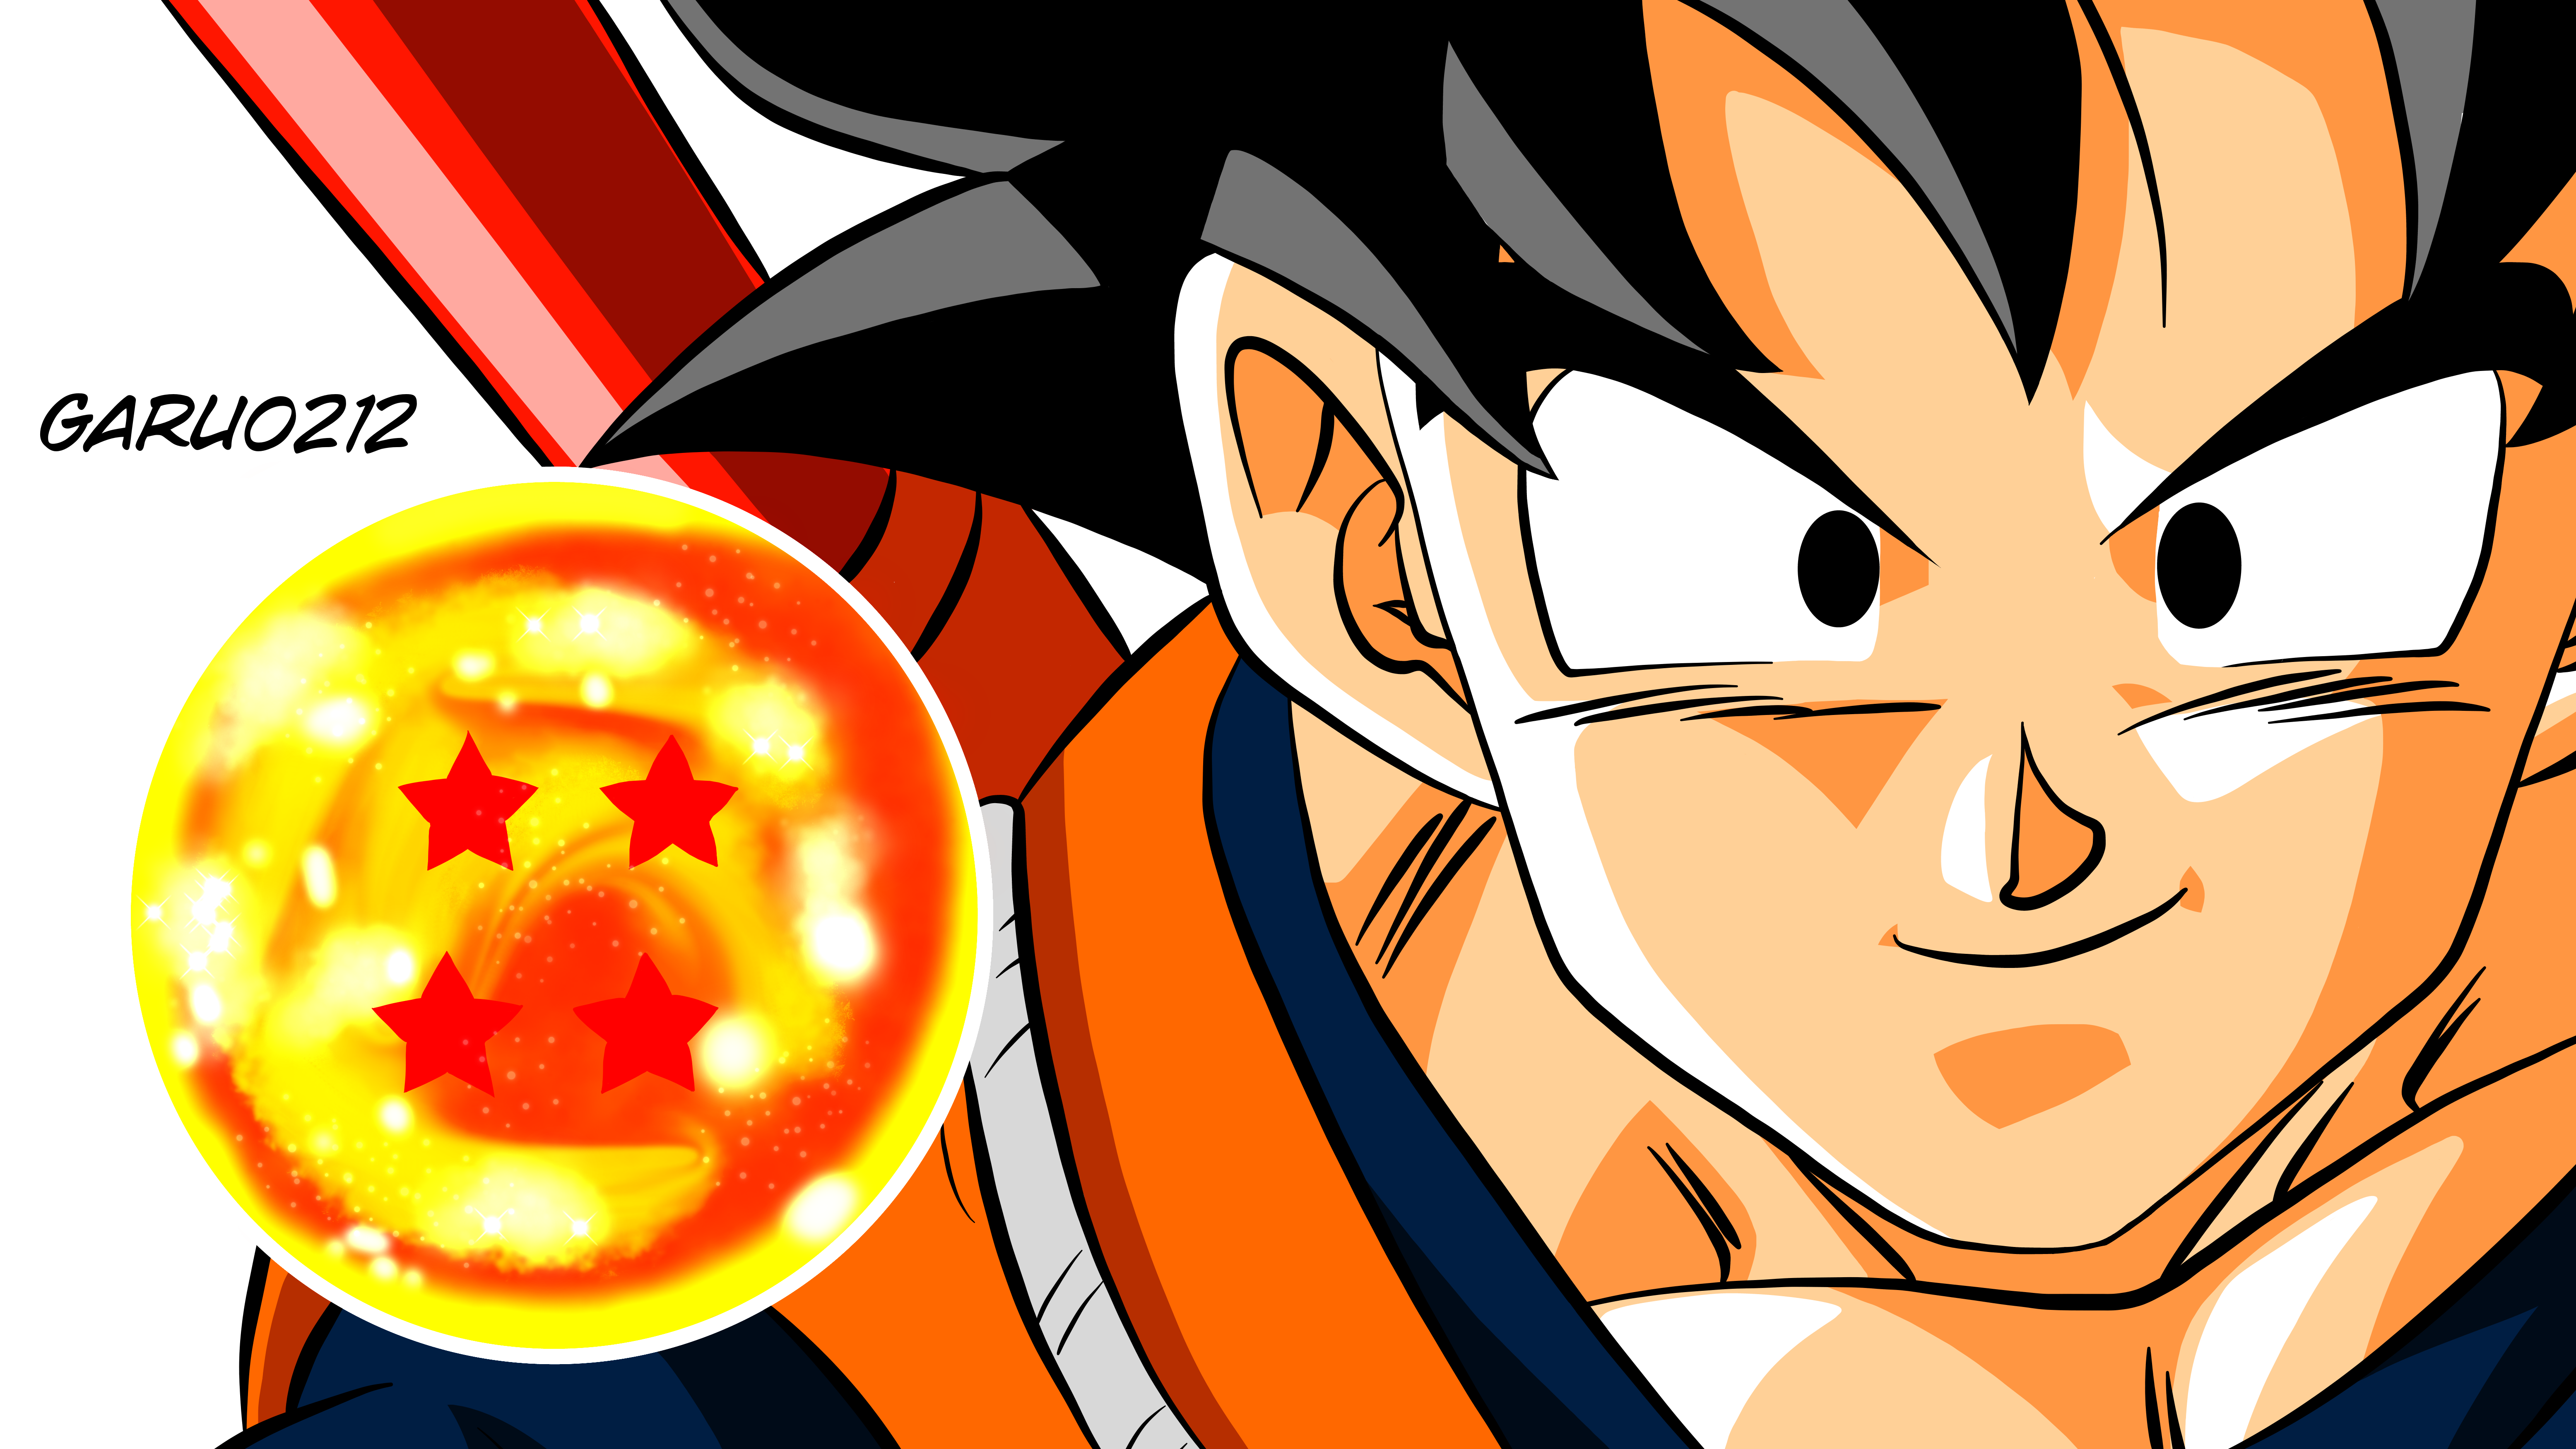 Son Goku || Esfera 4 Estrellas || by garu0212 on DeviantArt